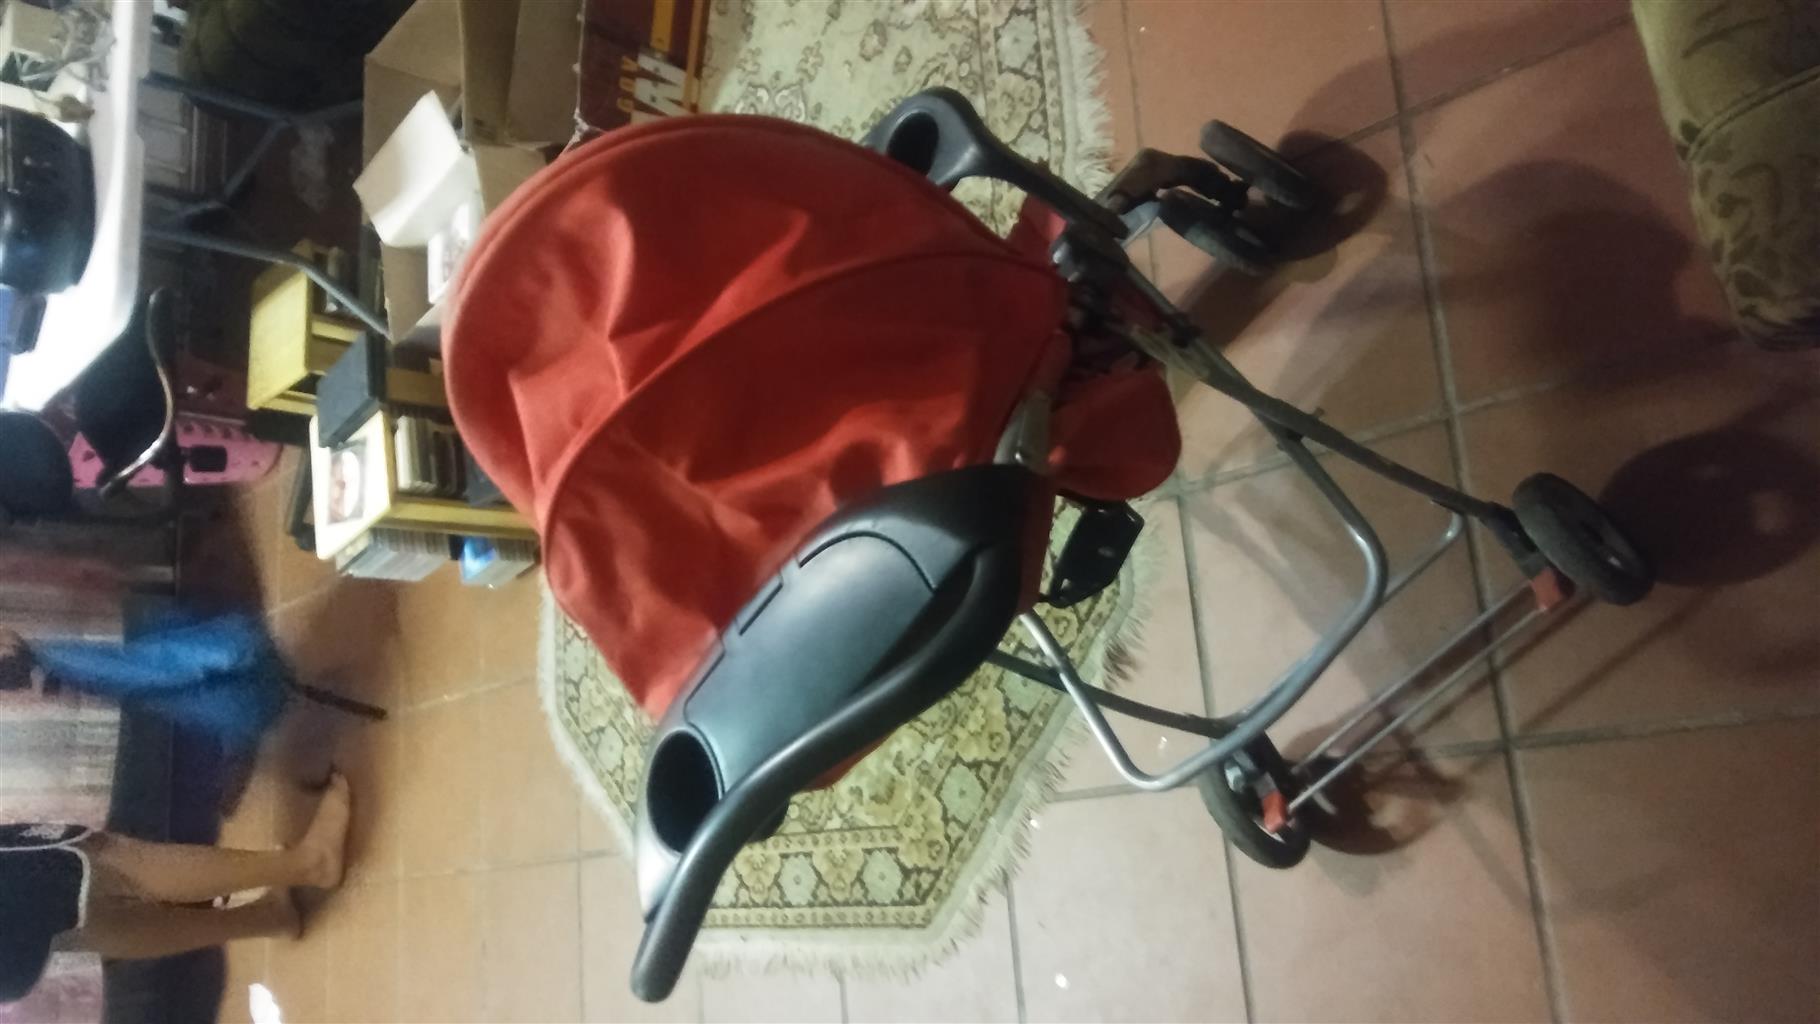 used pockit stroller for sale